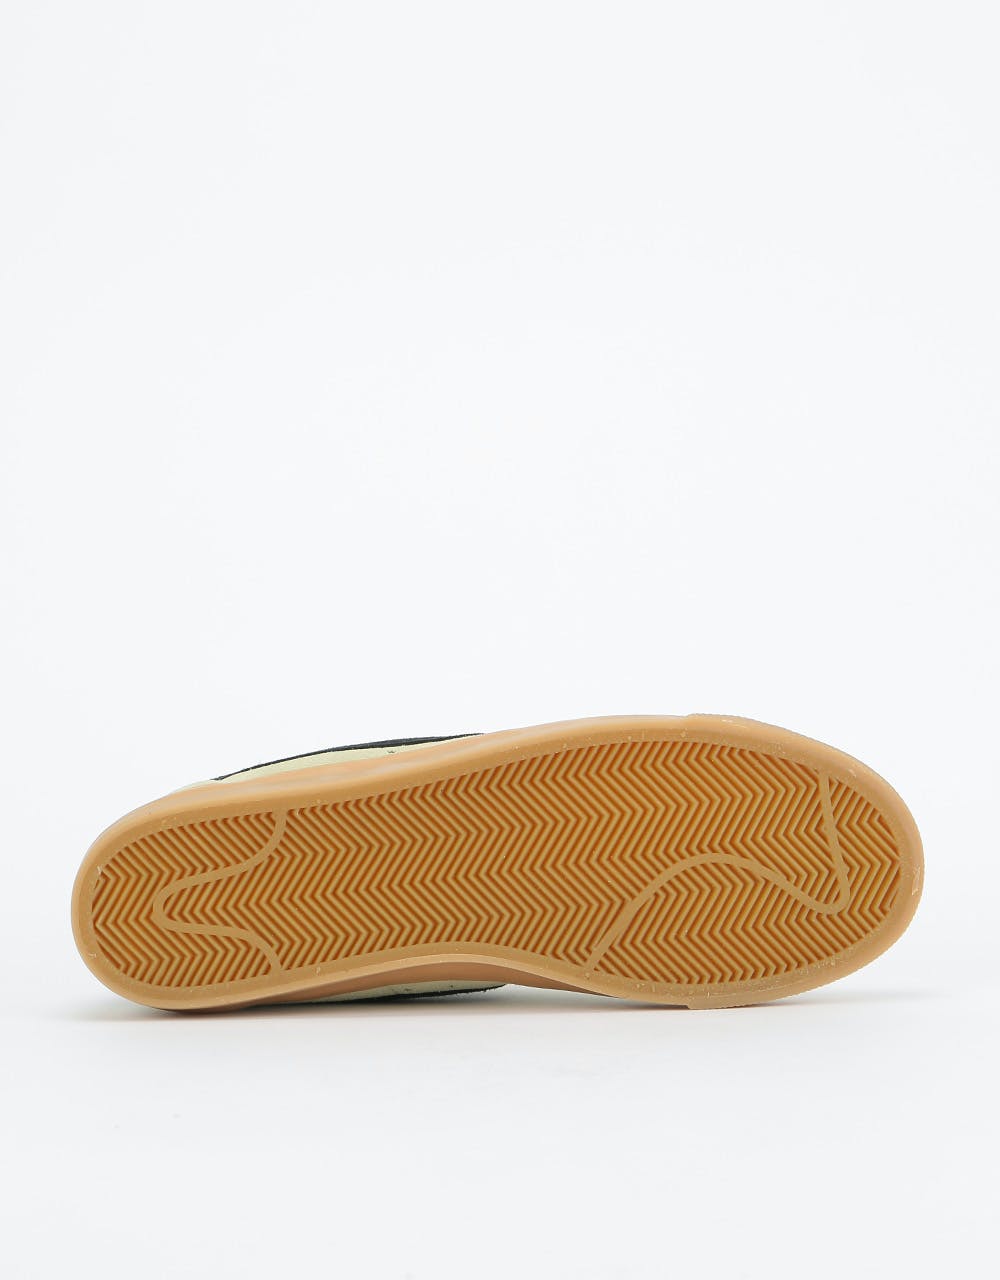 Nike SB Blazer Low GT Skate Shoes - Olive Aura/Black-Olive Aura